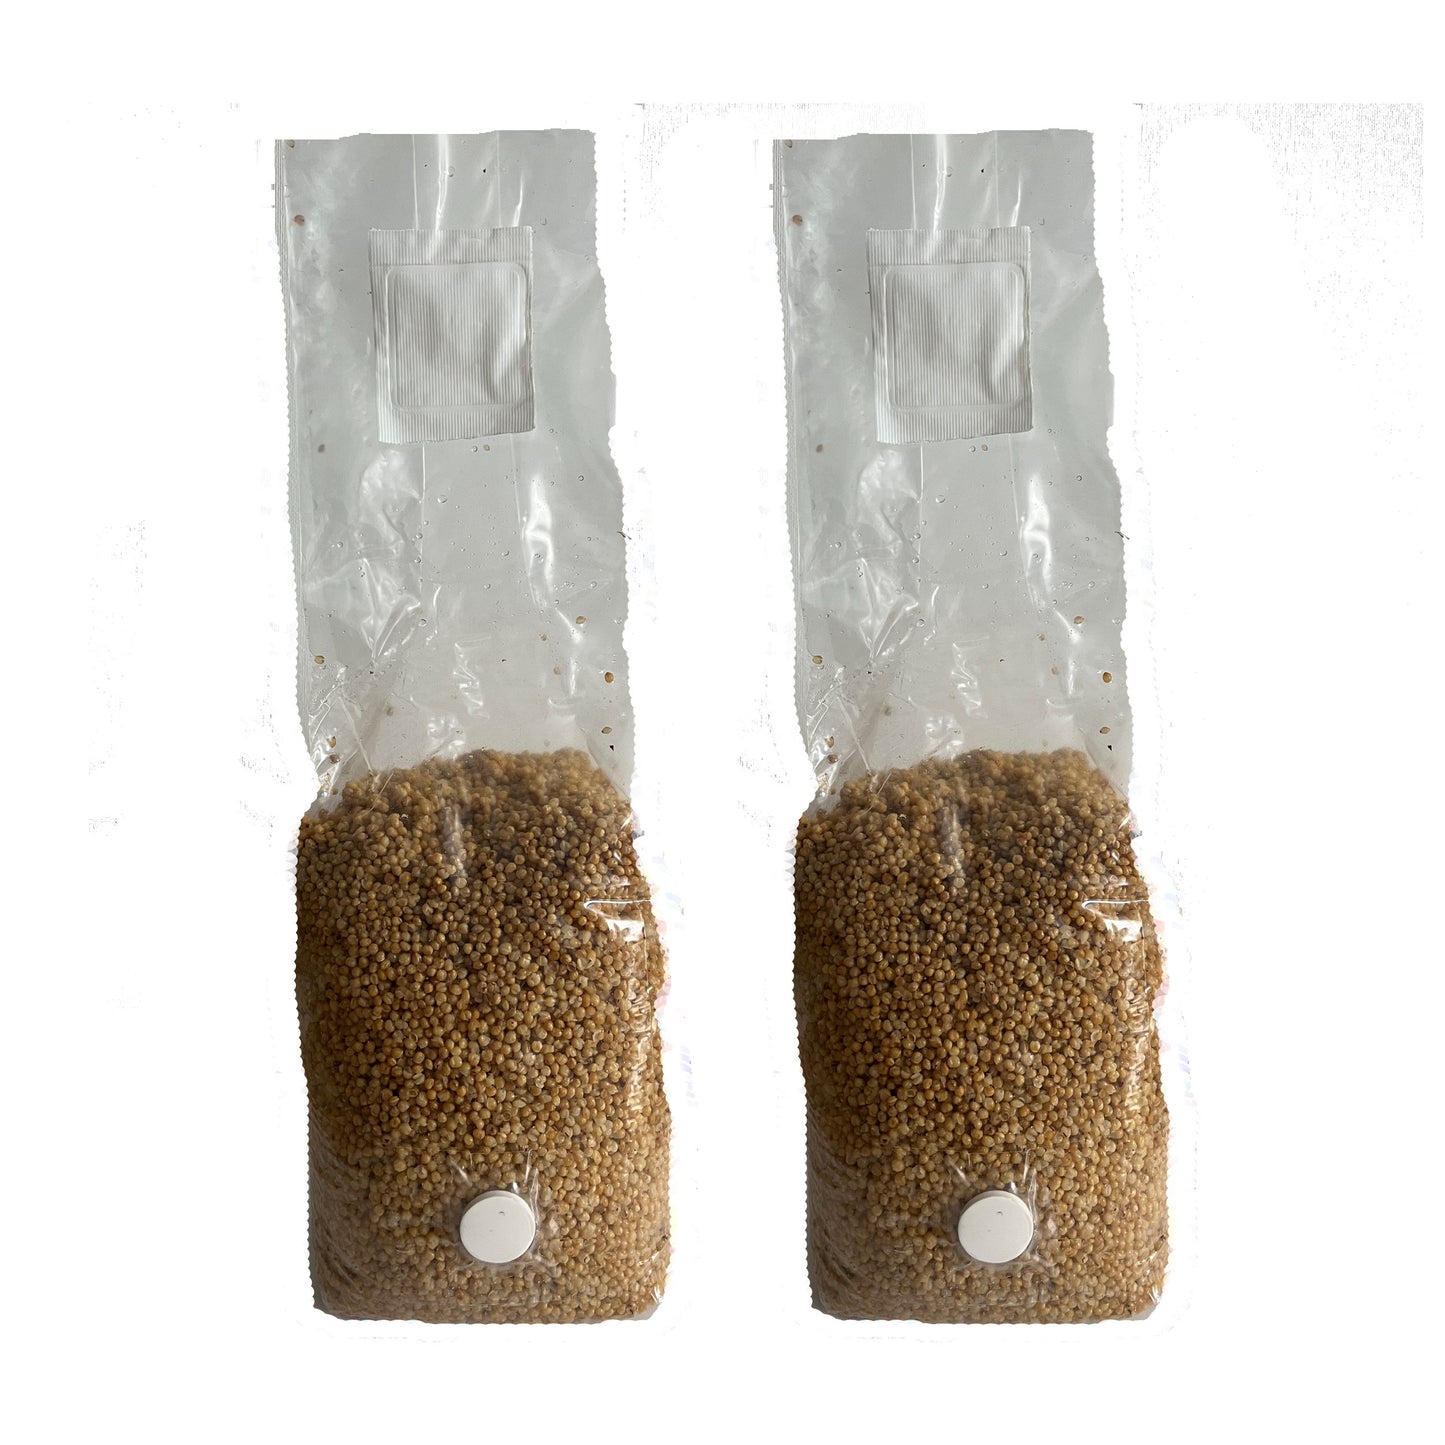 sterile millet for making mushroom spawn